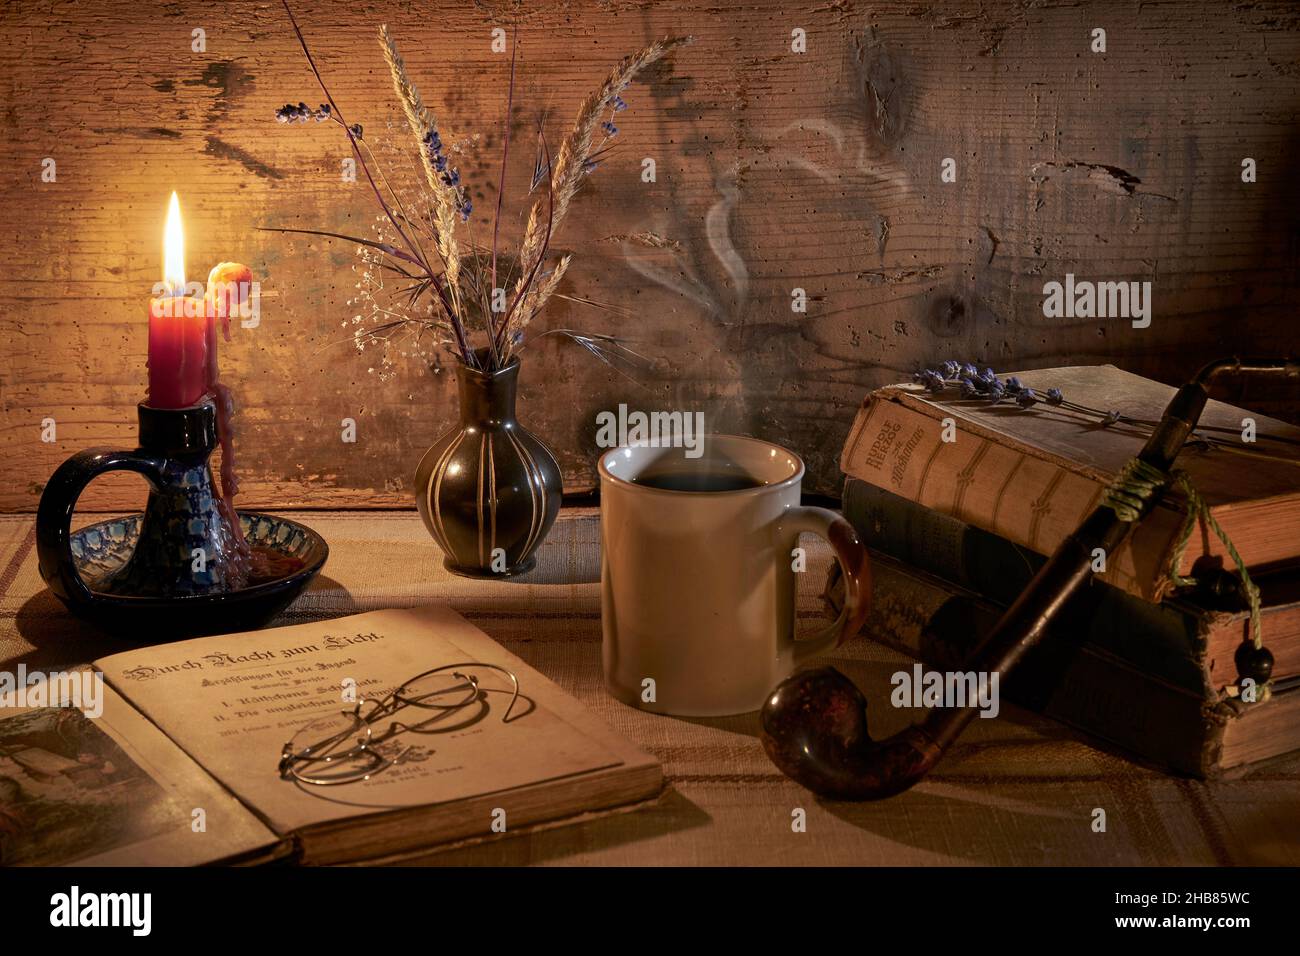 Retro Stillleben mit dampfender Kaffeetasse, Büchern, Tabakpfeife, alte Brille, Kerzenhalter mit tropfender Kerze, Vase mit Gräsern und Lavendel Stock Photo